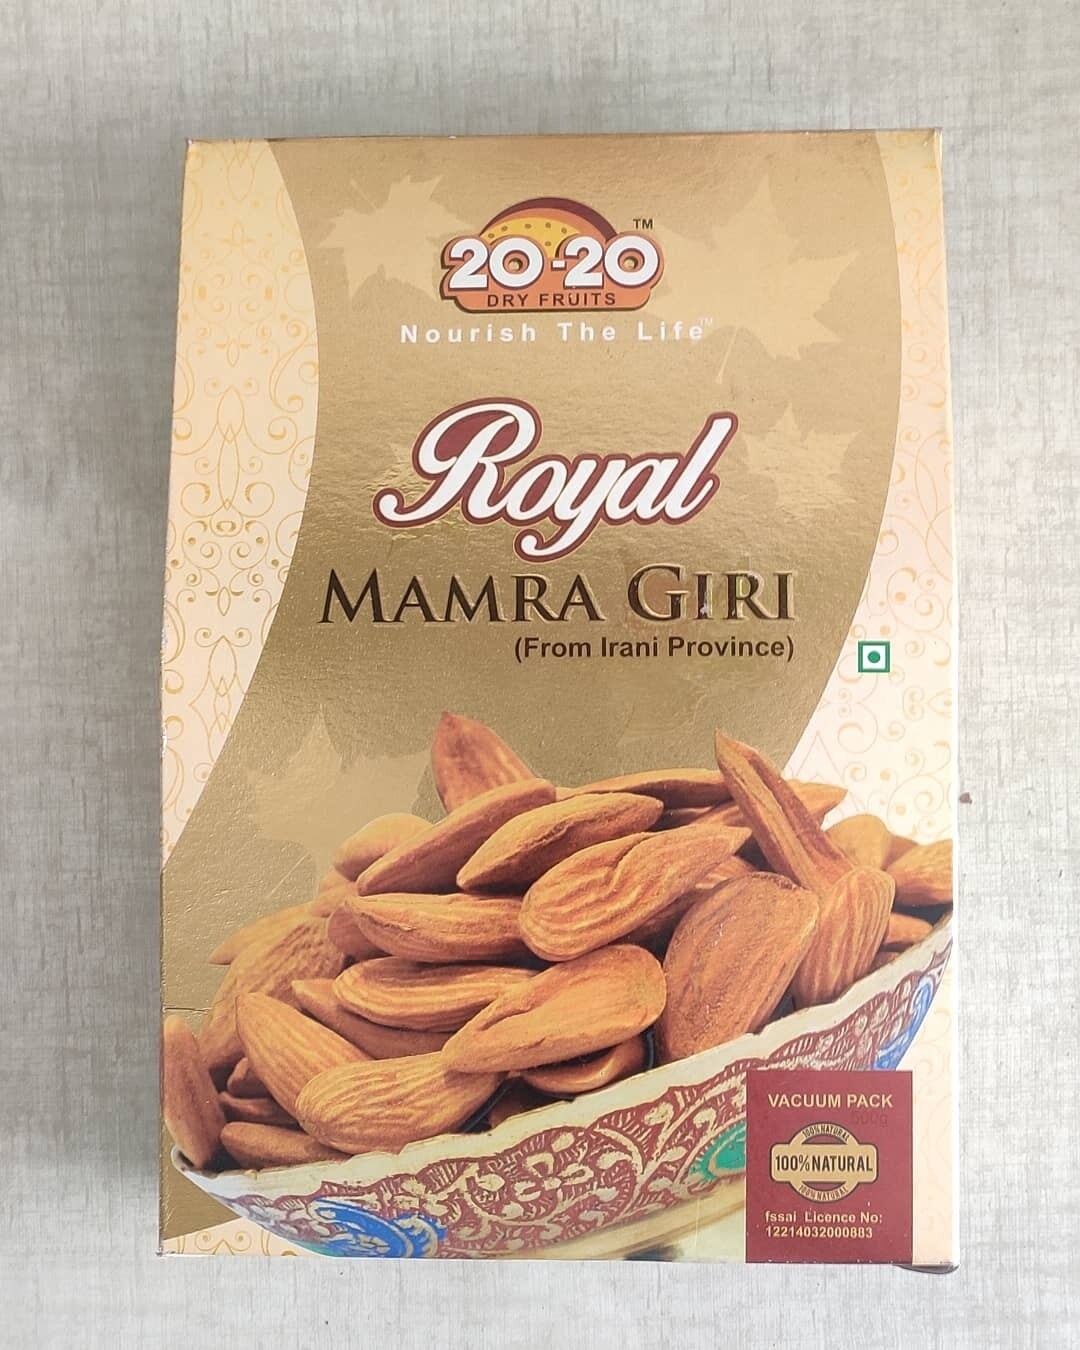 20-20 Brand Royal Mamra Giri Almond - 500 gram | Mamra Giri Badam